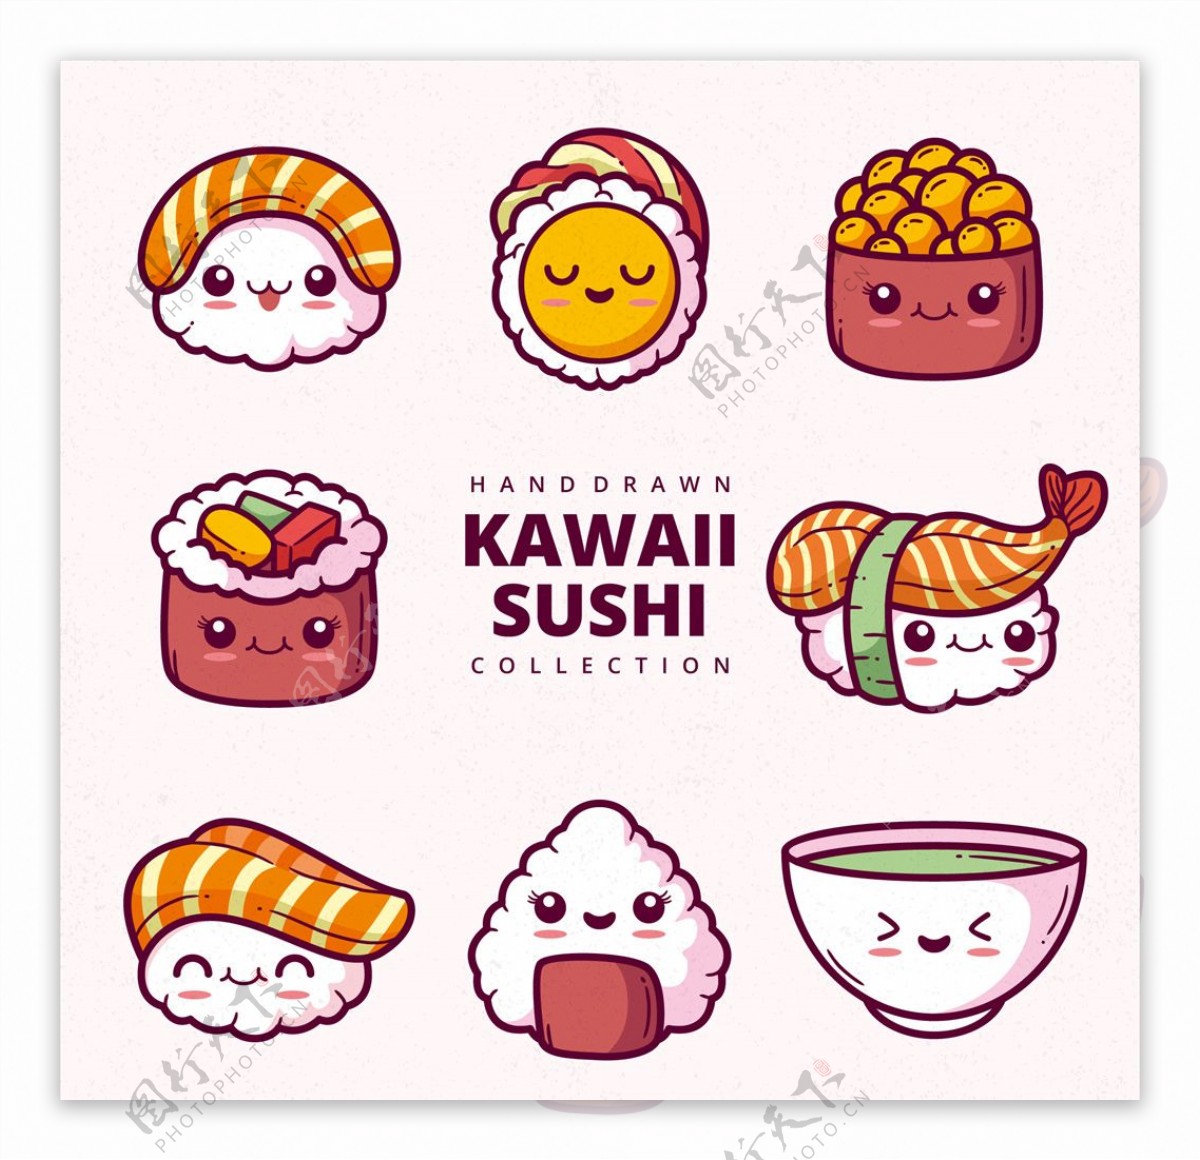 可爱卡通日本寿司矢量图形